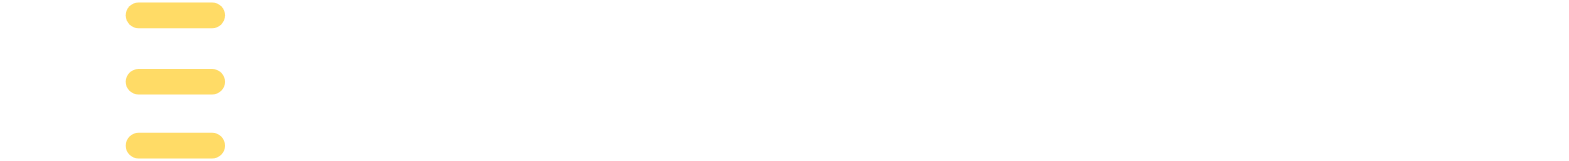 Jeffs' Brands logo large for dark backgrounds (transparent PNG)